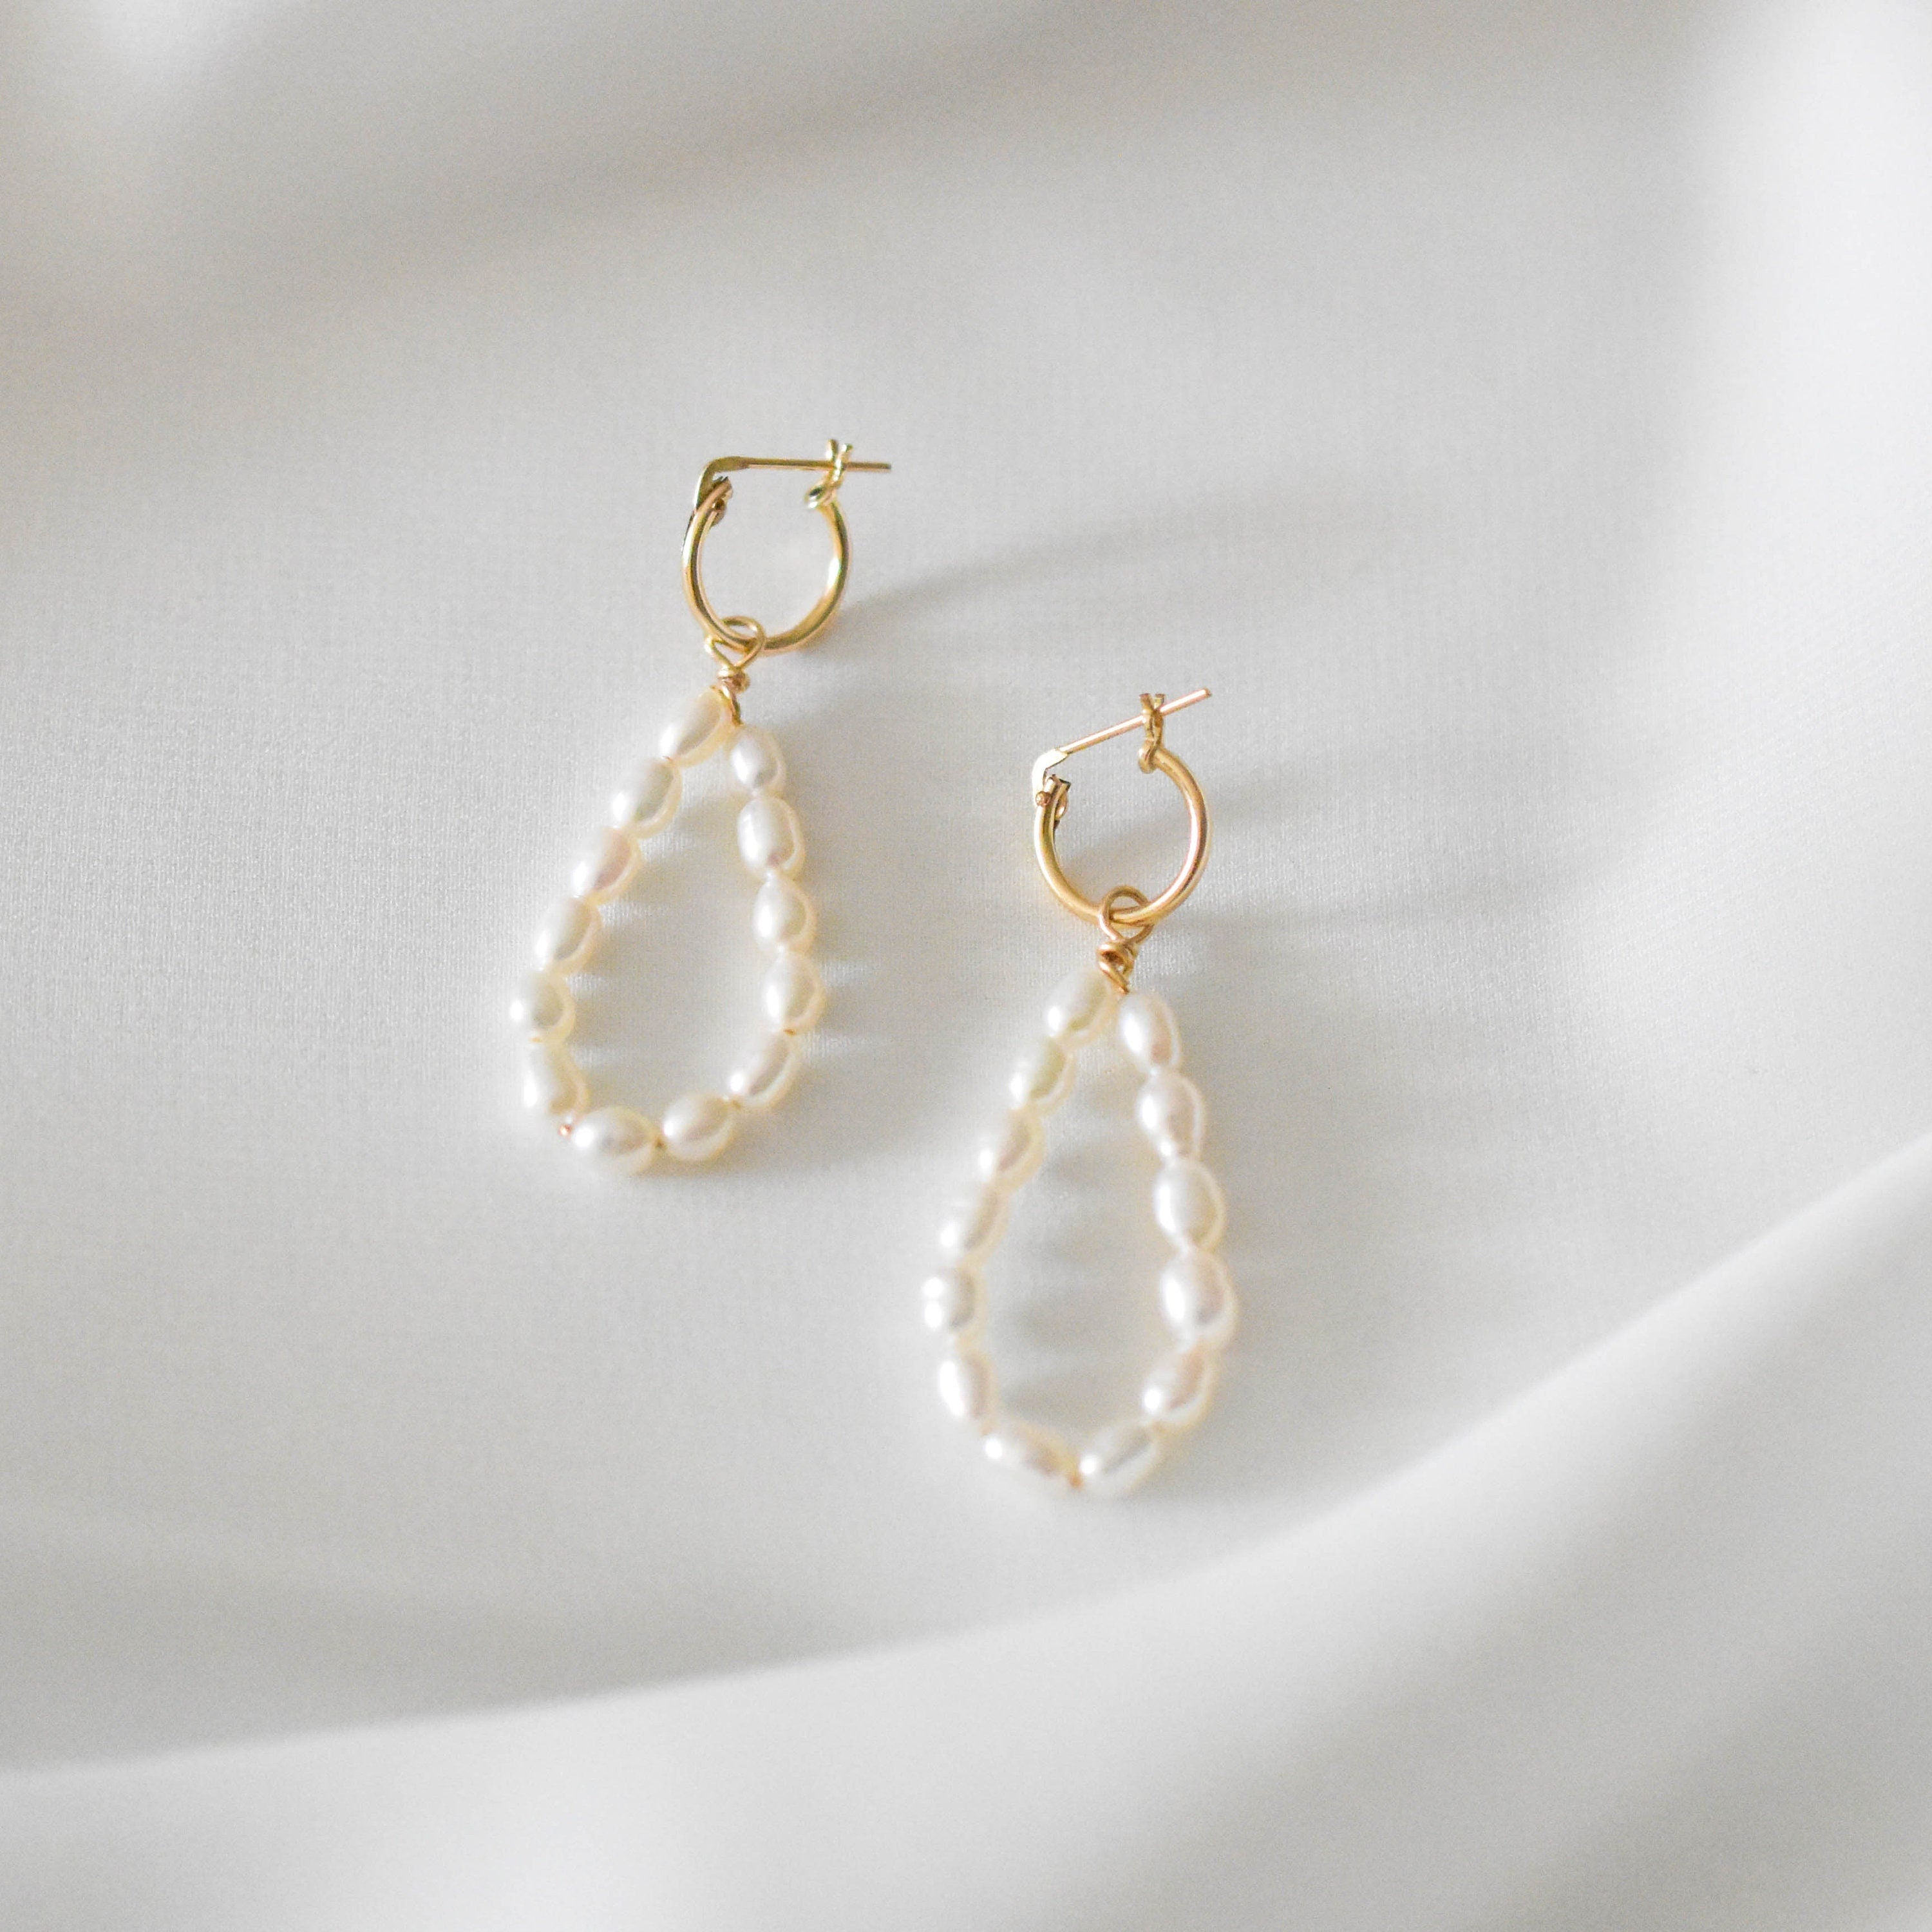 Pearl Teardrop Earrings - Teardrop Earrings, Real Pearl Earrings, White Earrings, Pearl Dangle Earrings, White dangle earrings |GFE00055